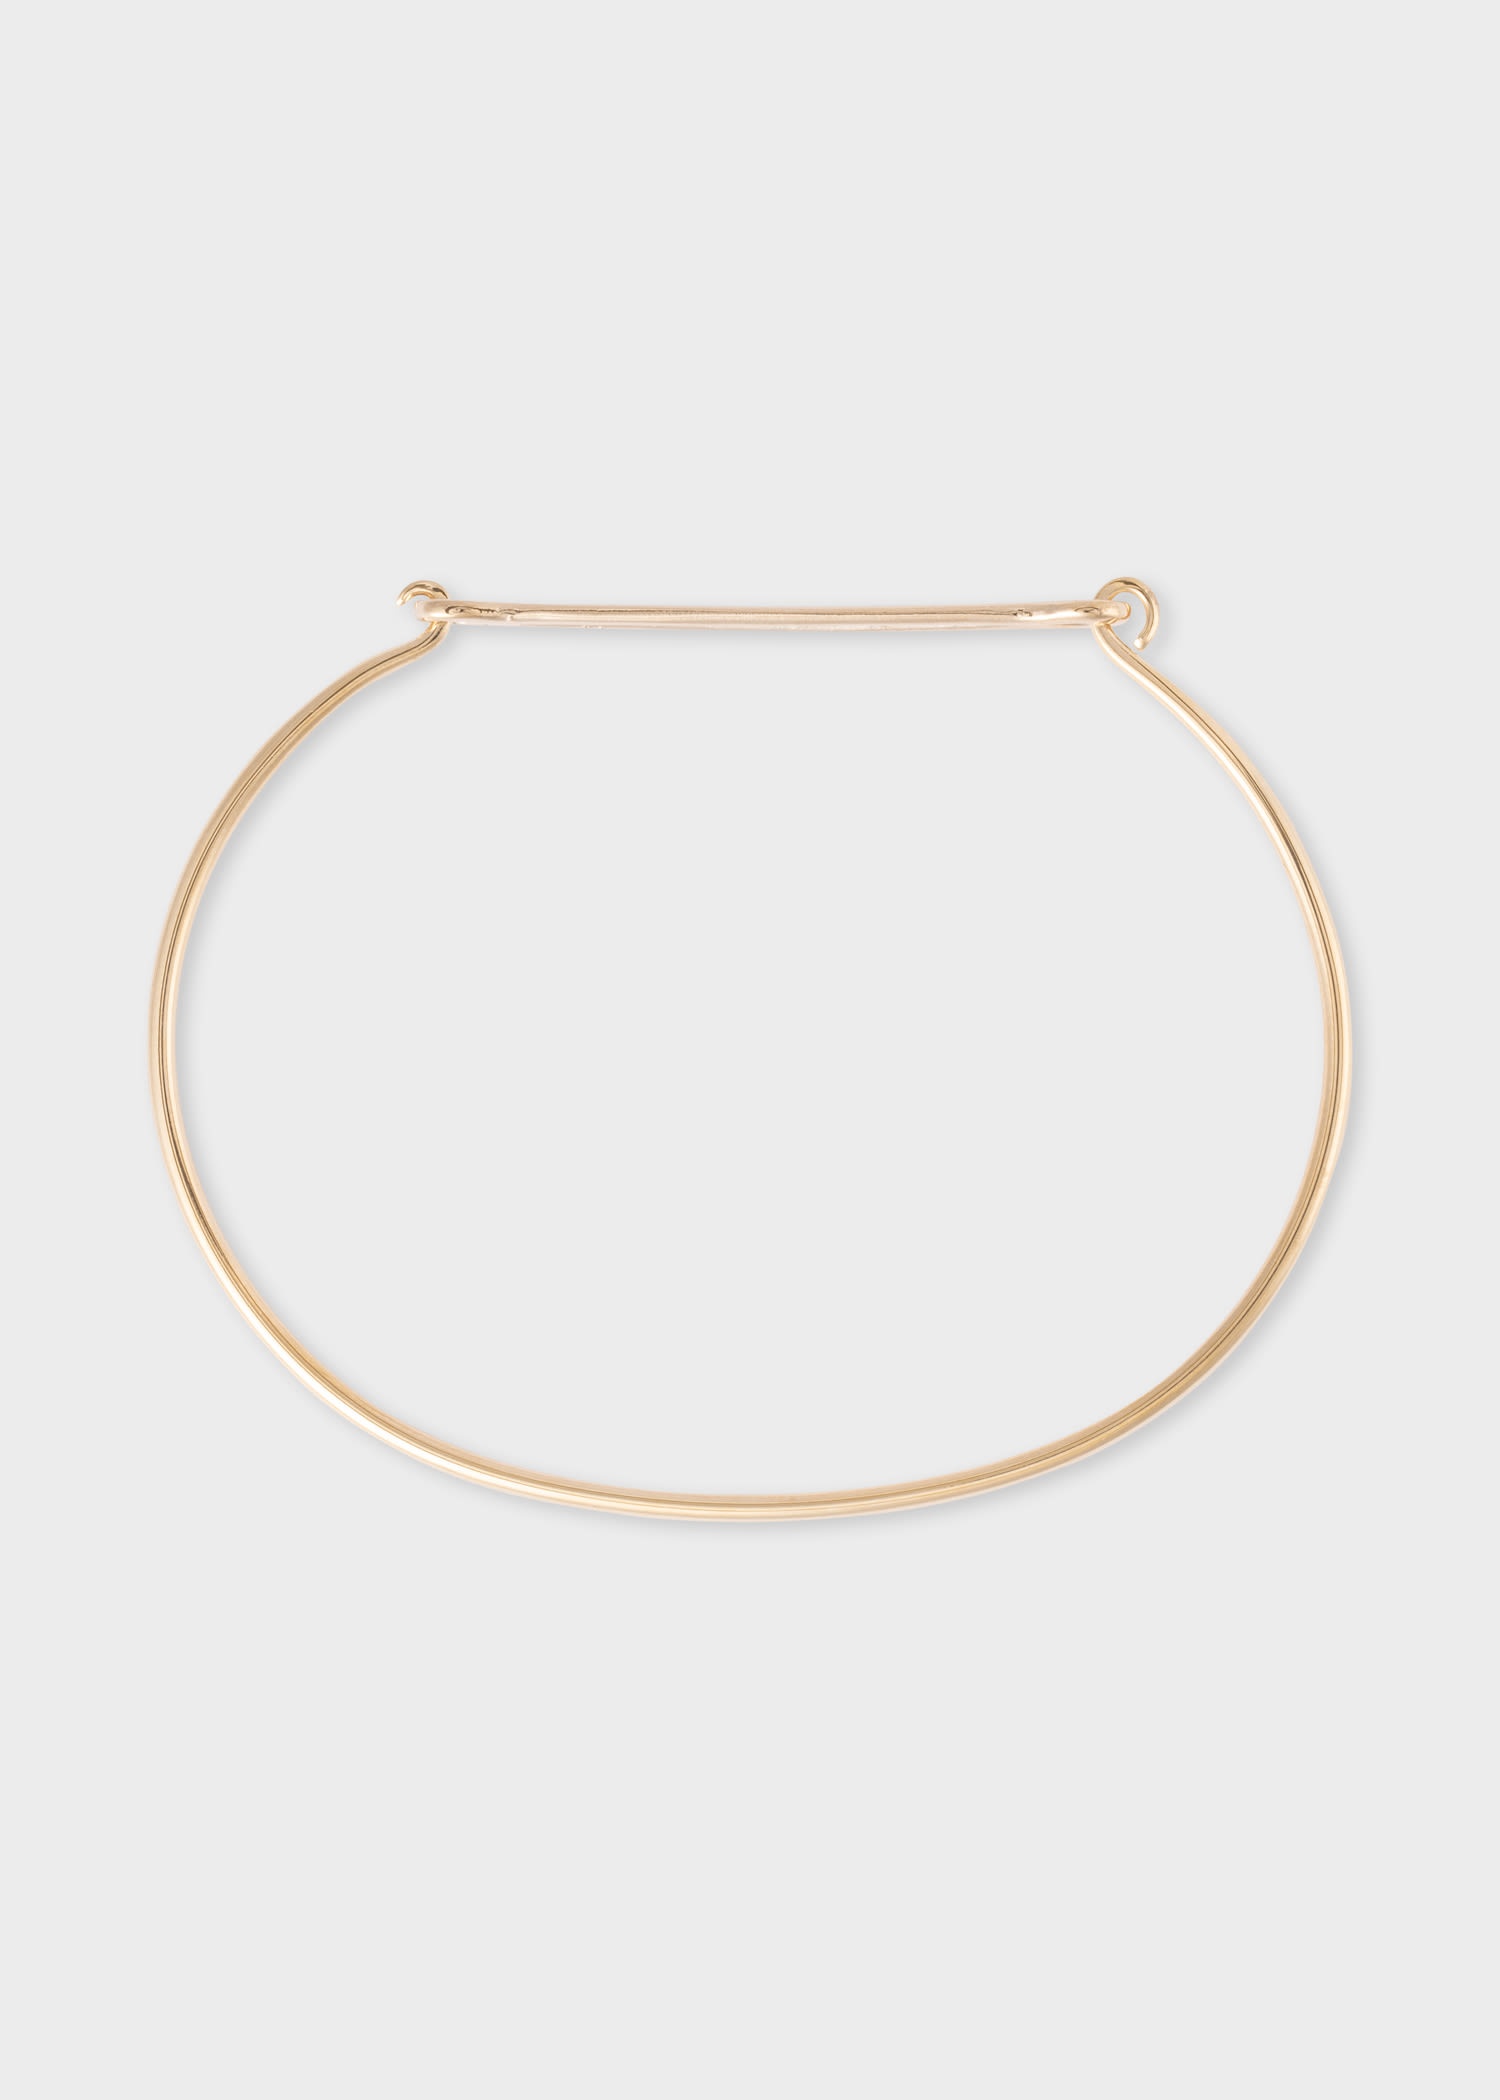 Bar Link Bracelet by Helena Rohner - 1